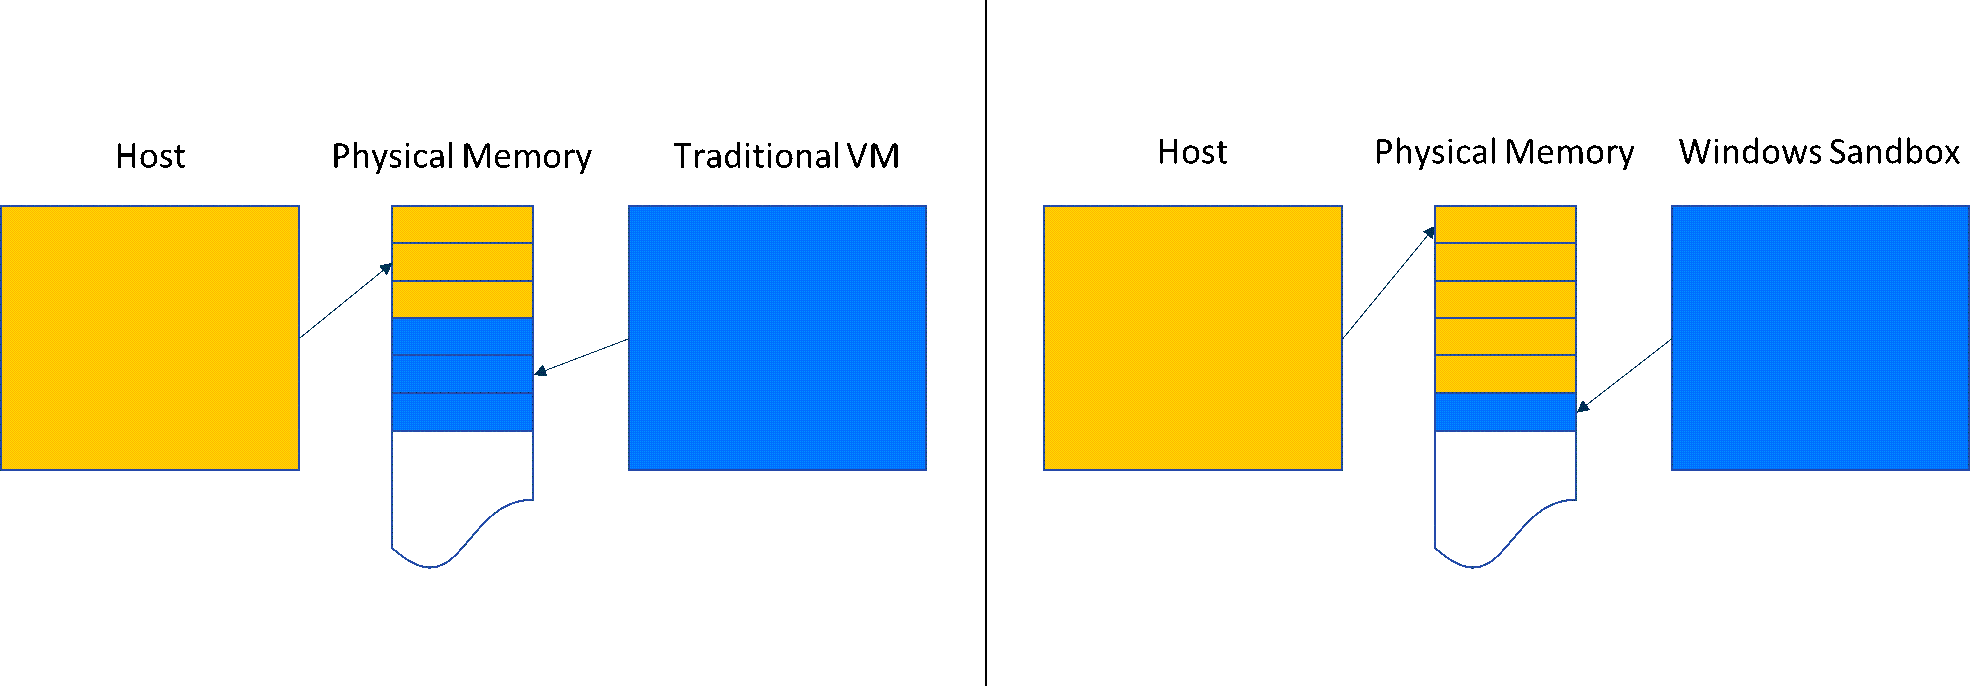 グラフでは、Windows サンドボックスでのメモリ共有と従来の VM の比較が行われます。